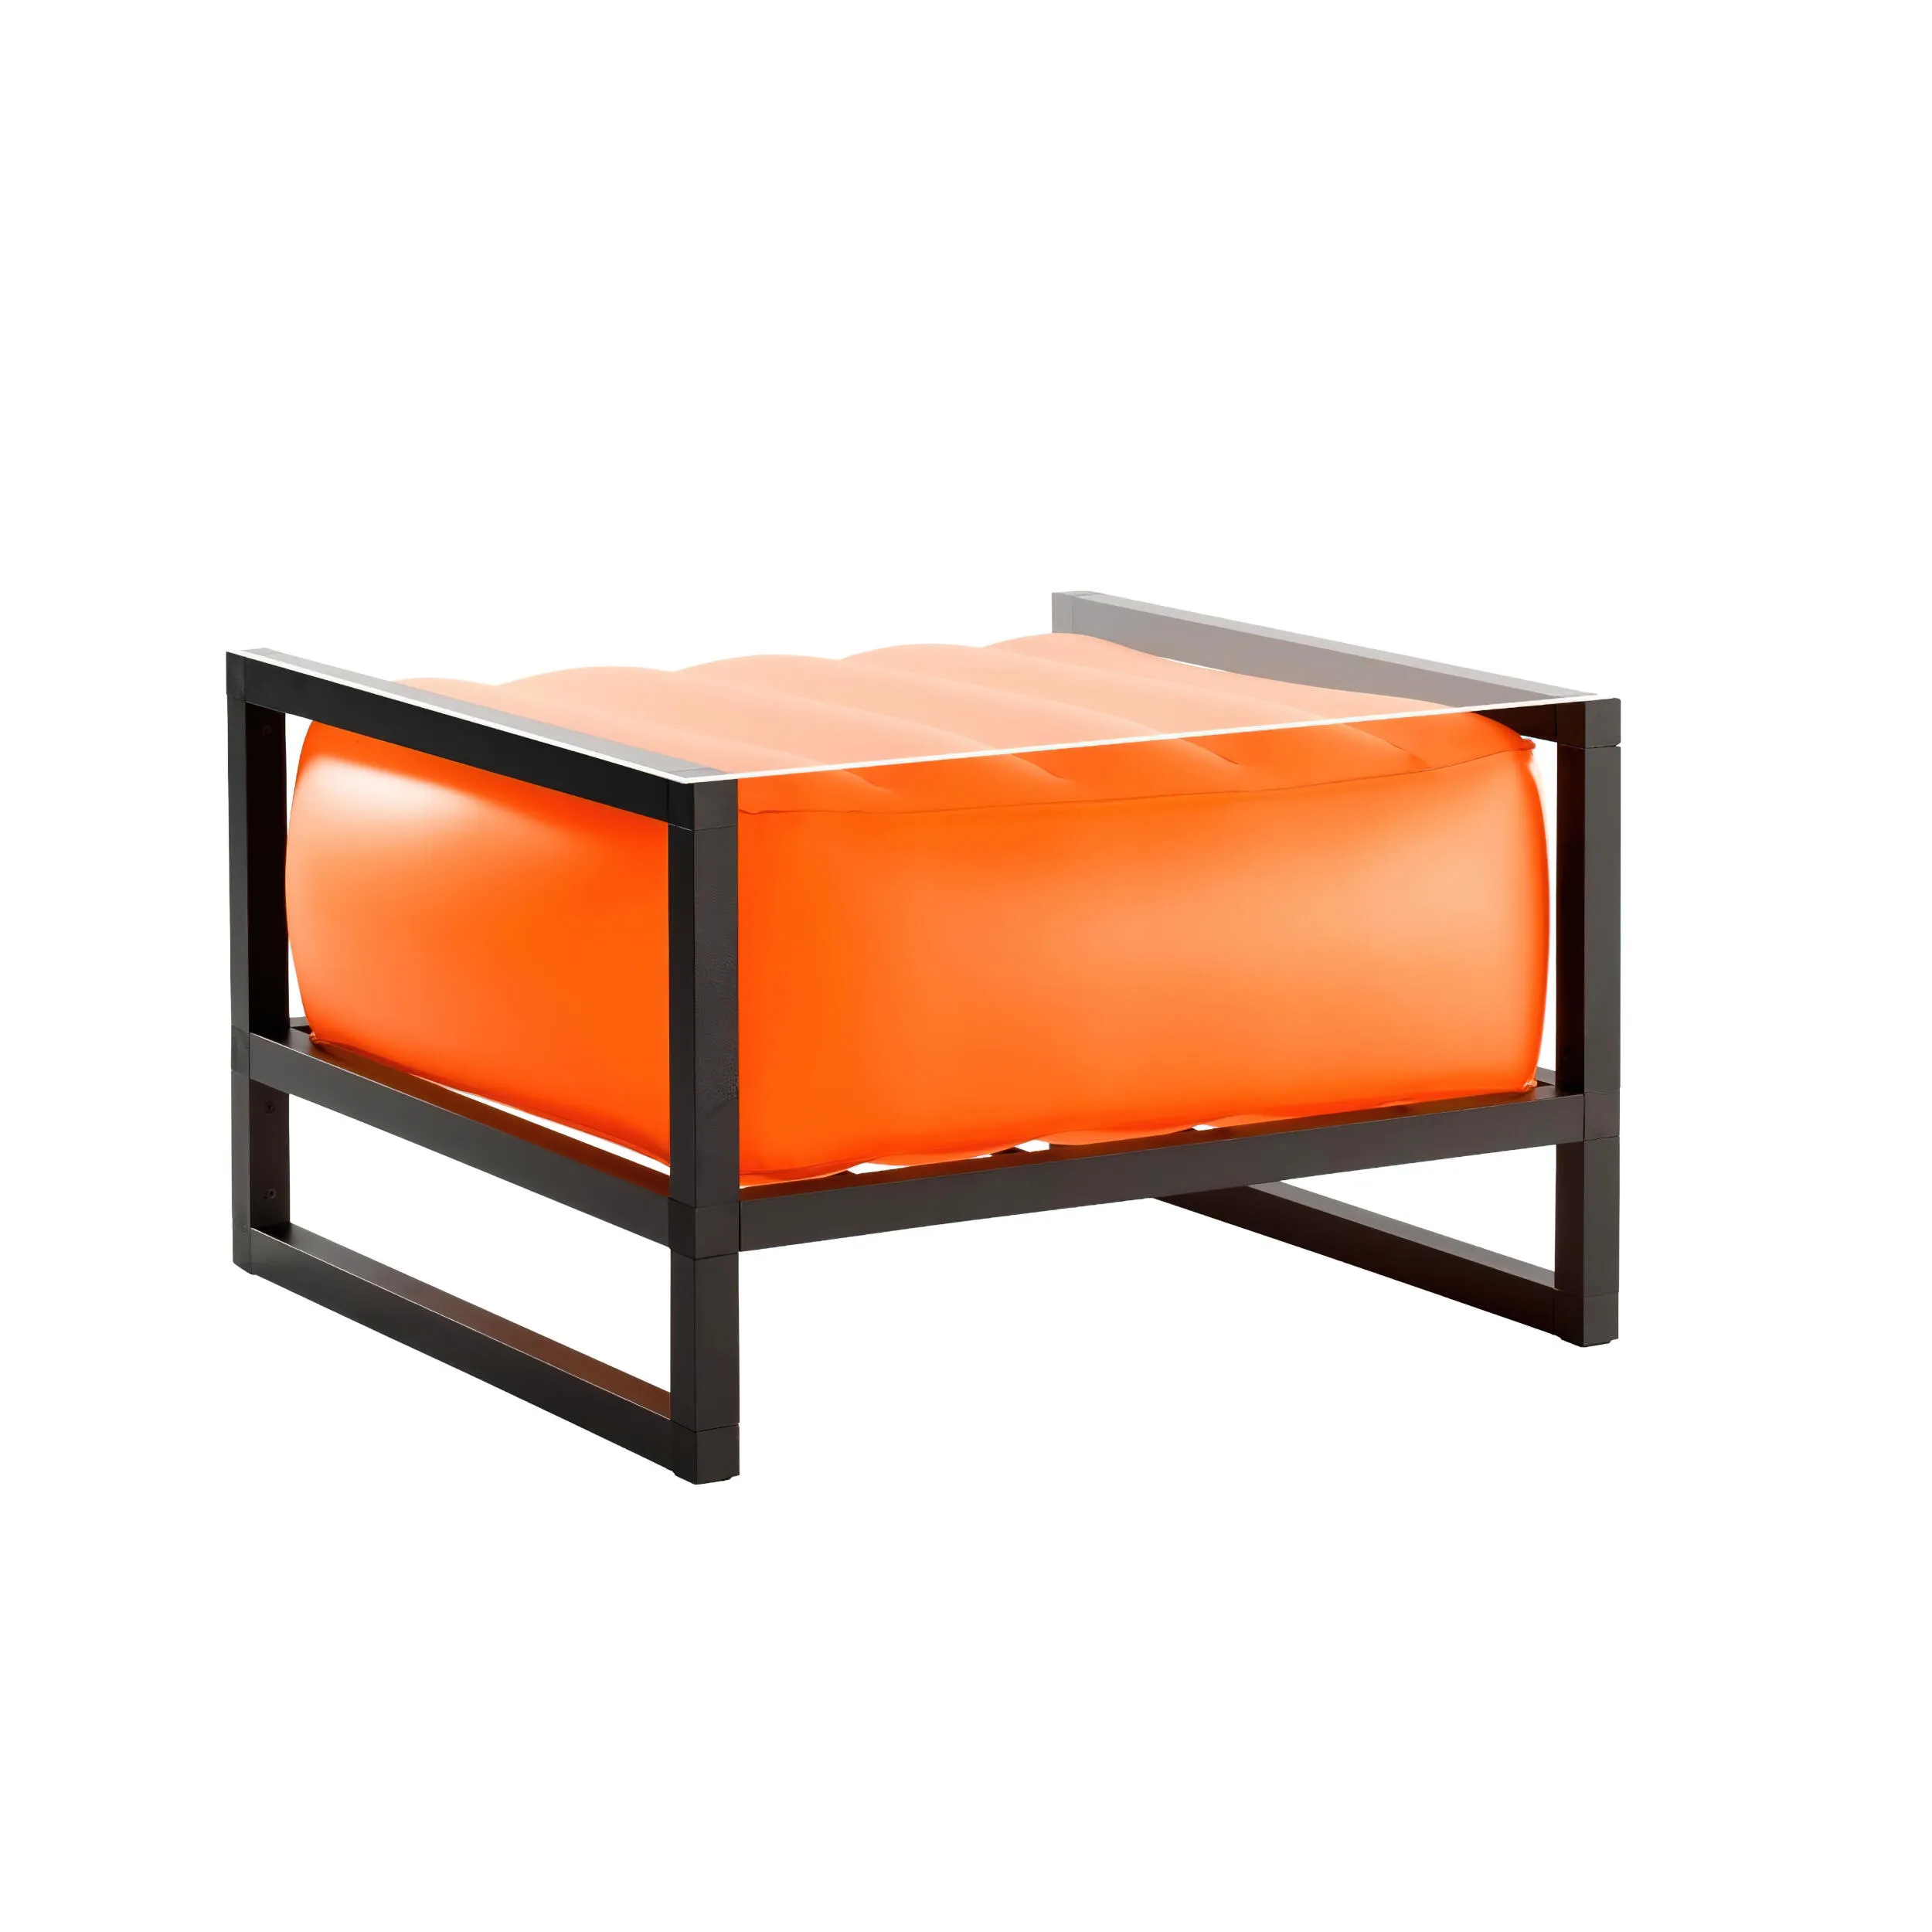 tavolino da salotto Yomi eko illuminato struttura in legno nero, dimensioni 62x70xH40 cm peso 14 kg, seduta gonfiabile in TPU colore arancio traslucido